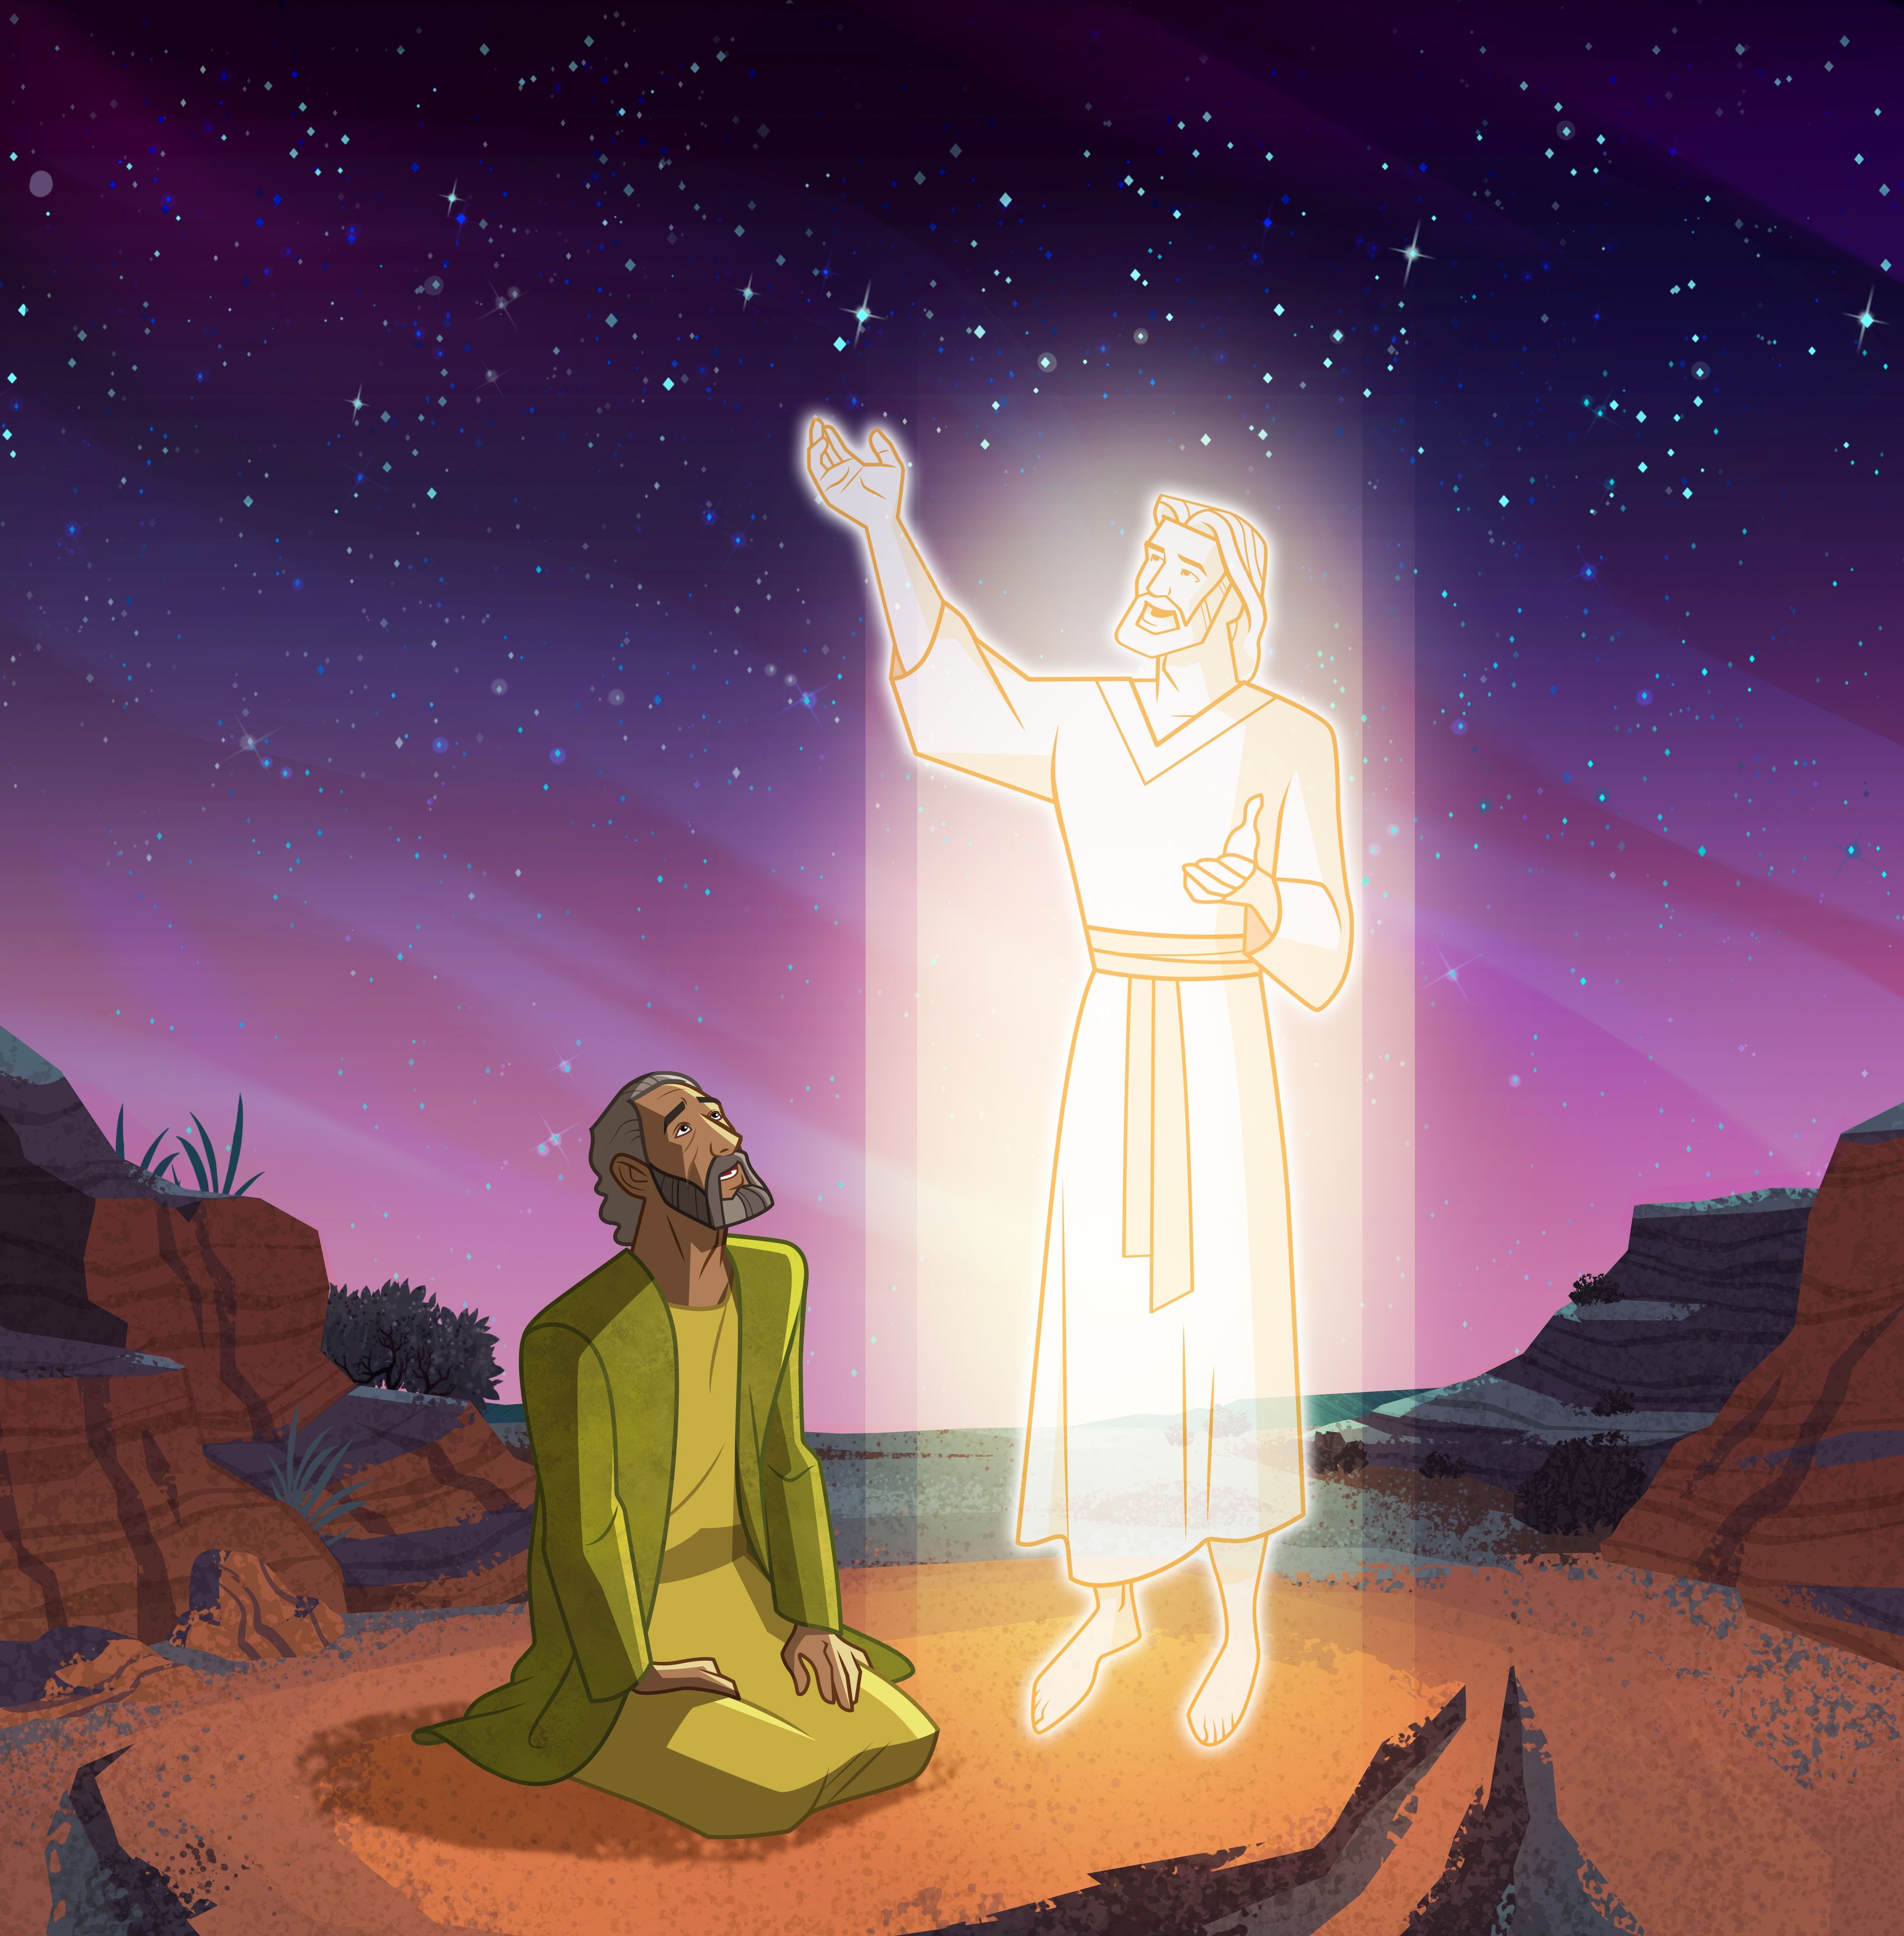 Illustration von Abraham, dem Gott erscheint 
Abraham 2:6-11